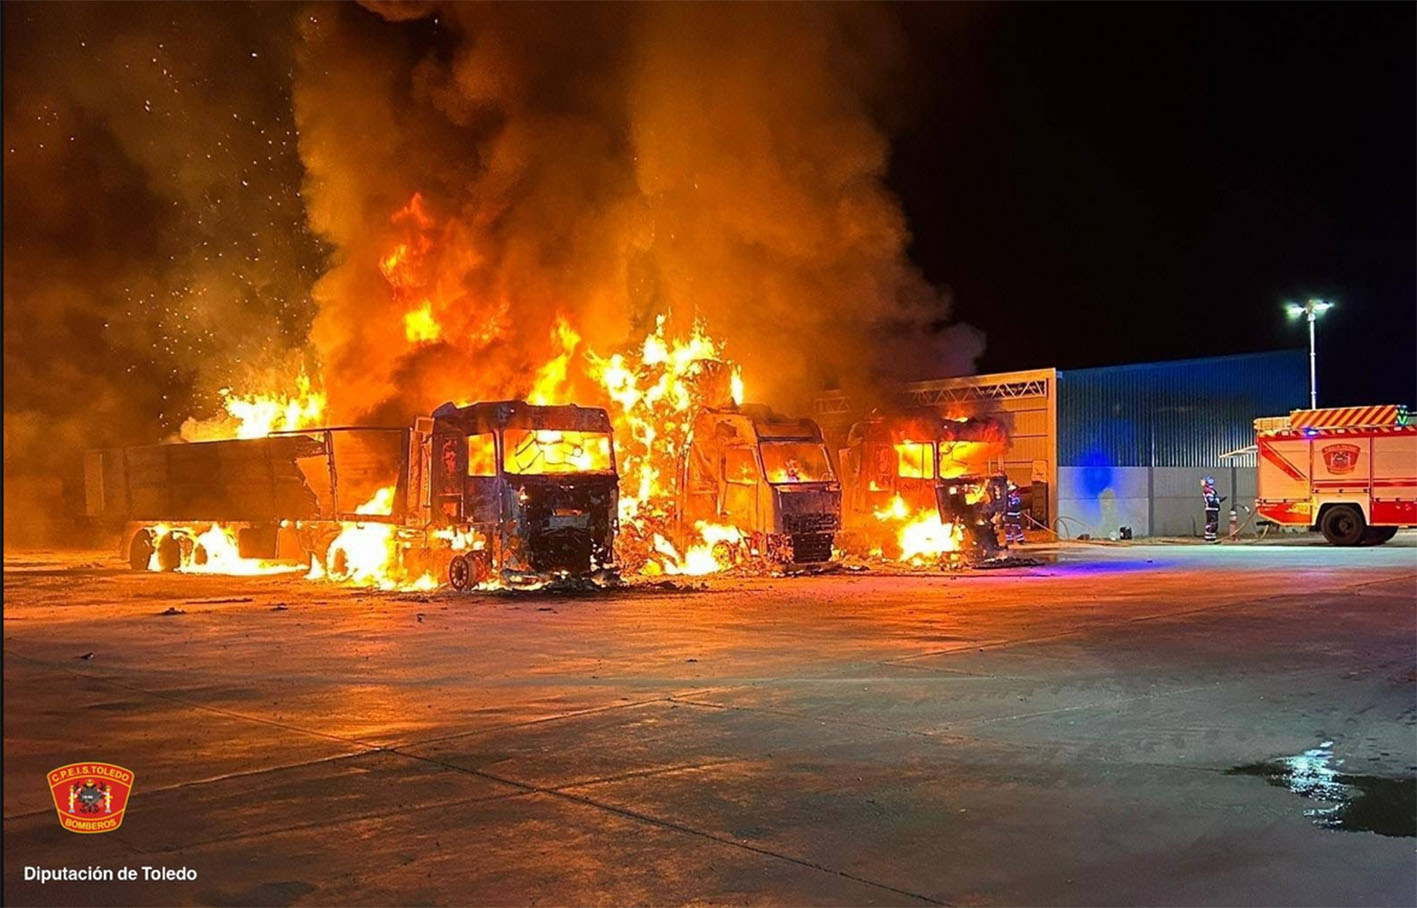 Así han ardido los tres camiones llenos de paja. Foto: @cpeistoledo